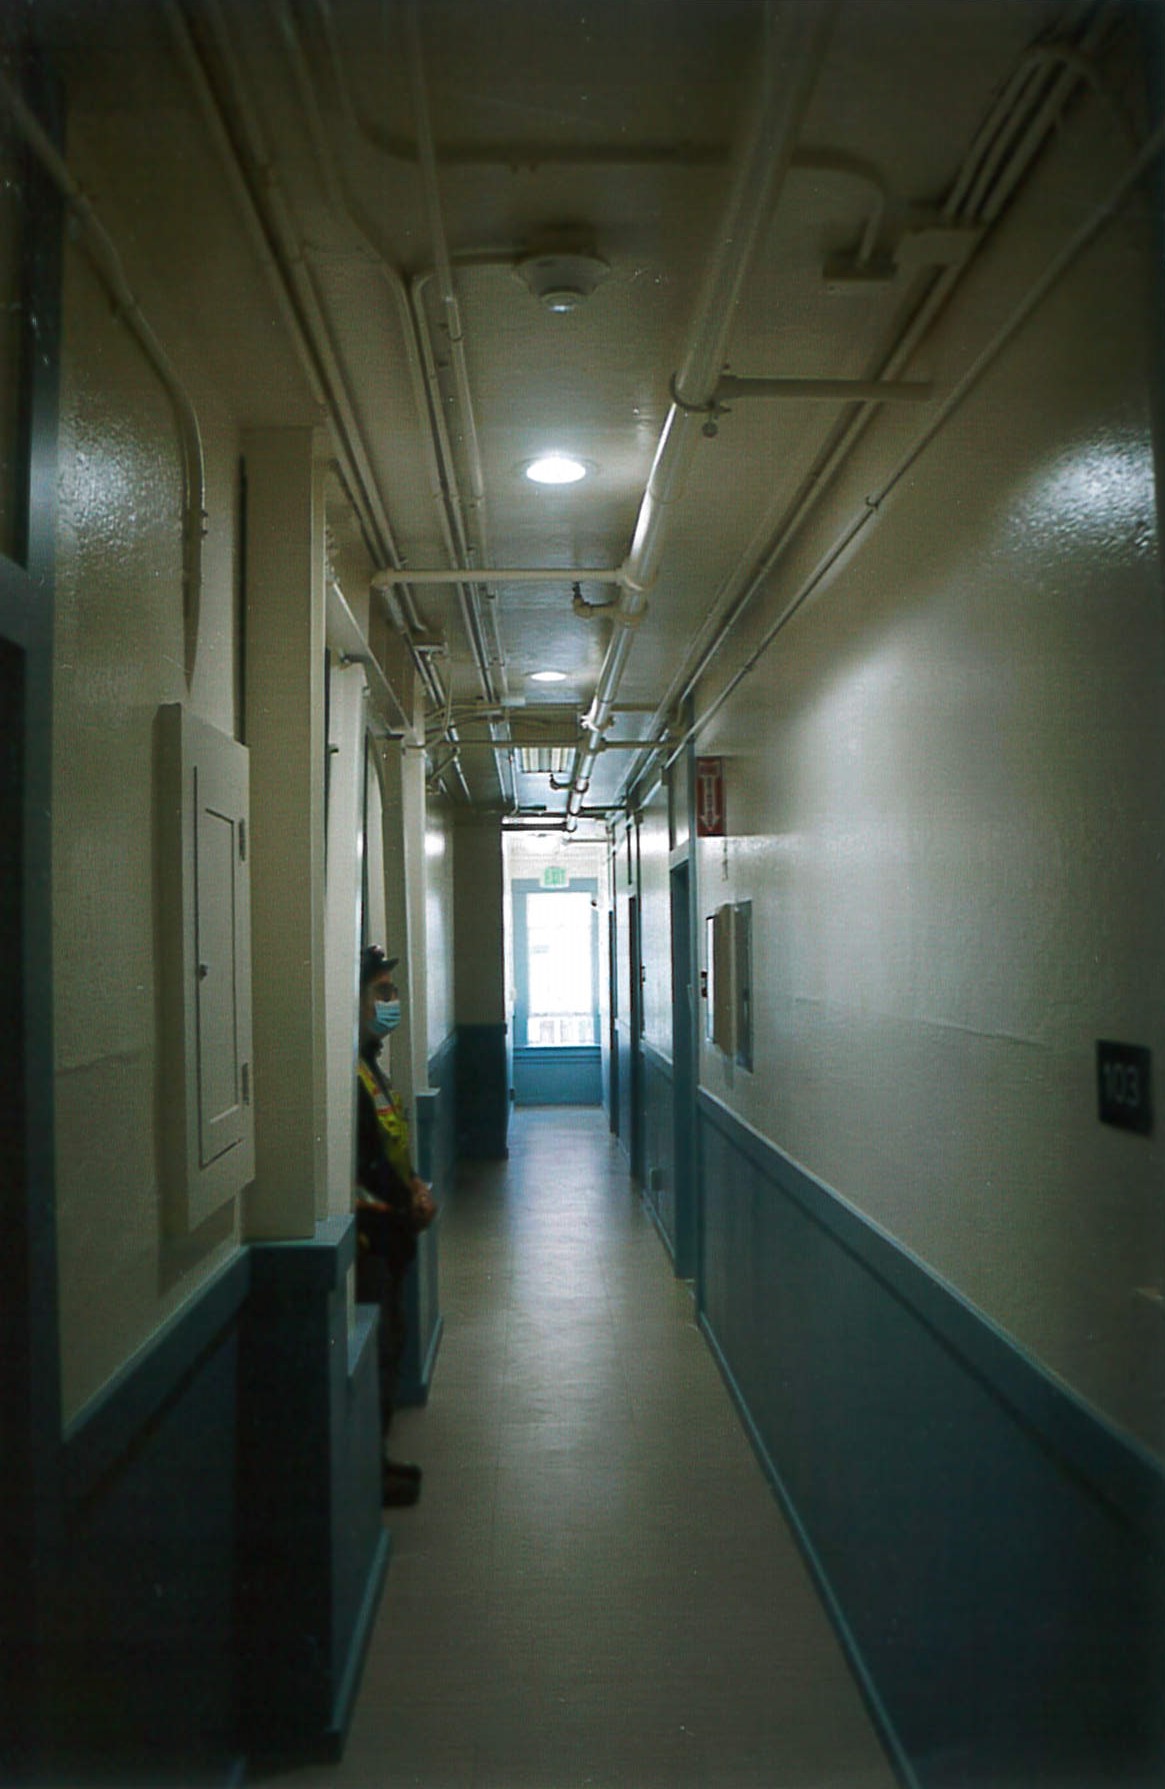 Renovated residential floor hallway